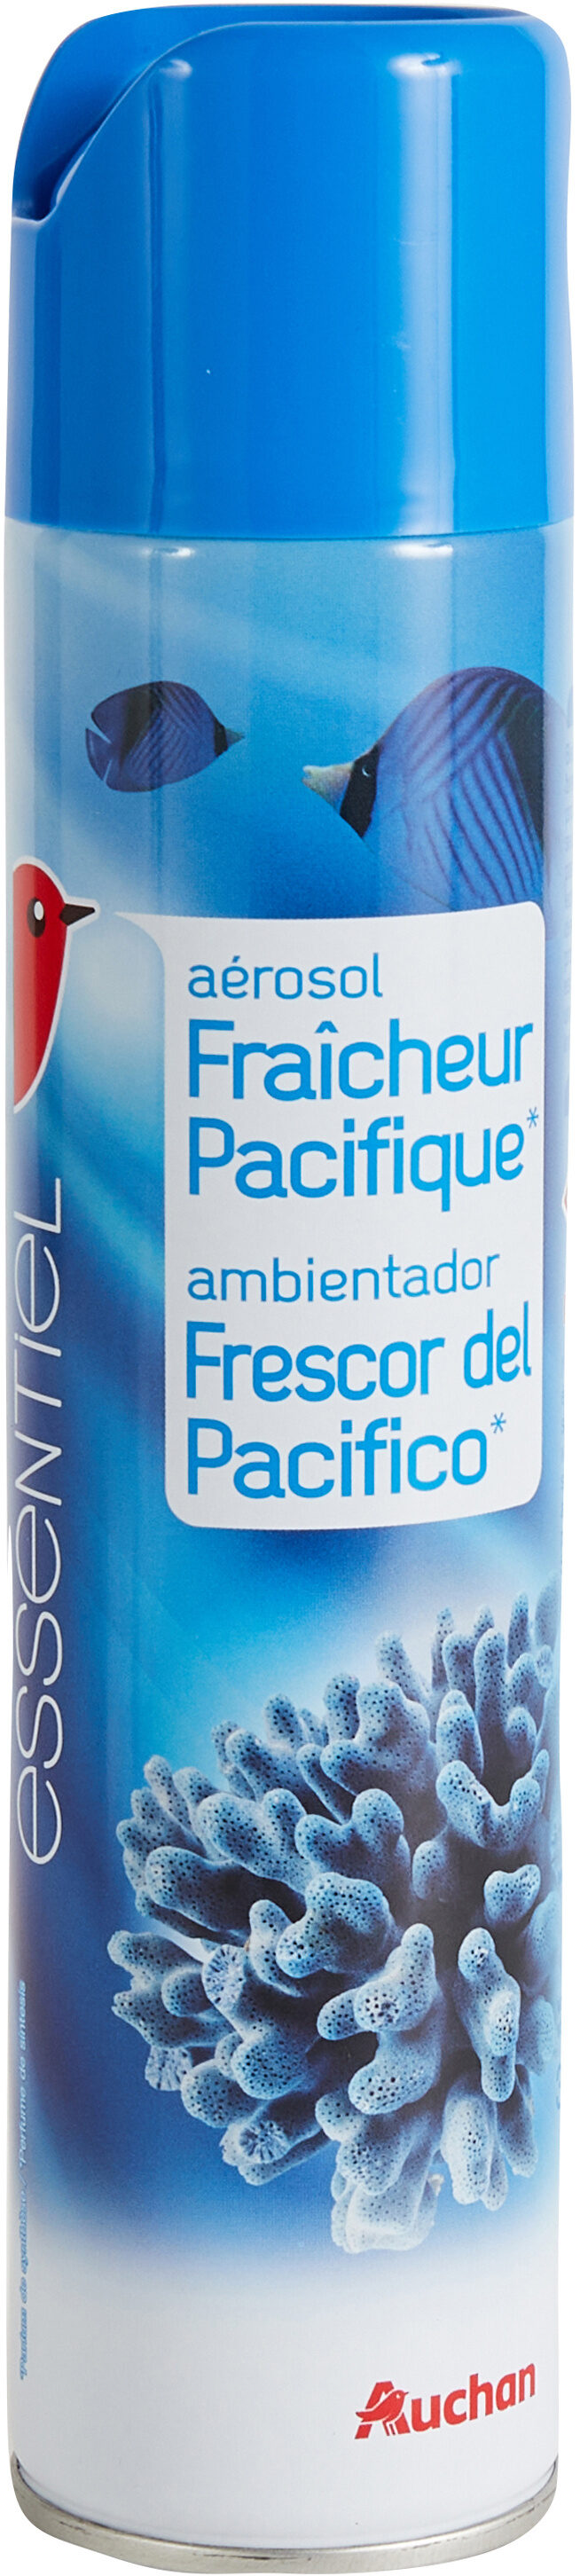 Désodorisant Fraîcheur Pacifique* - Produit - fr